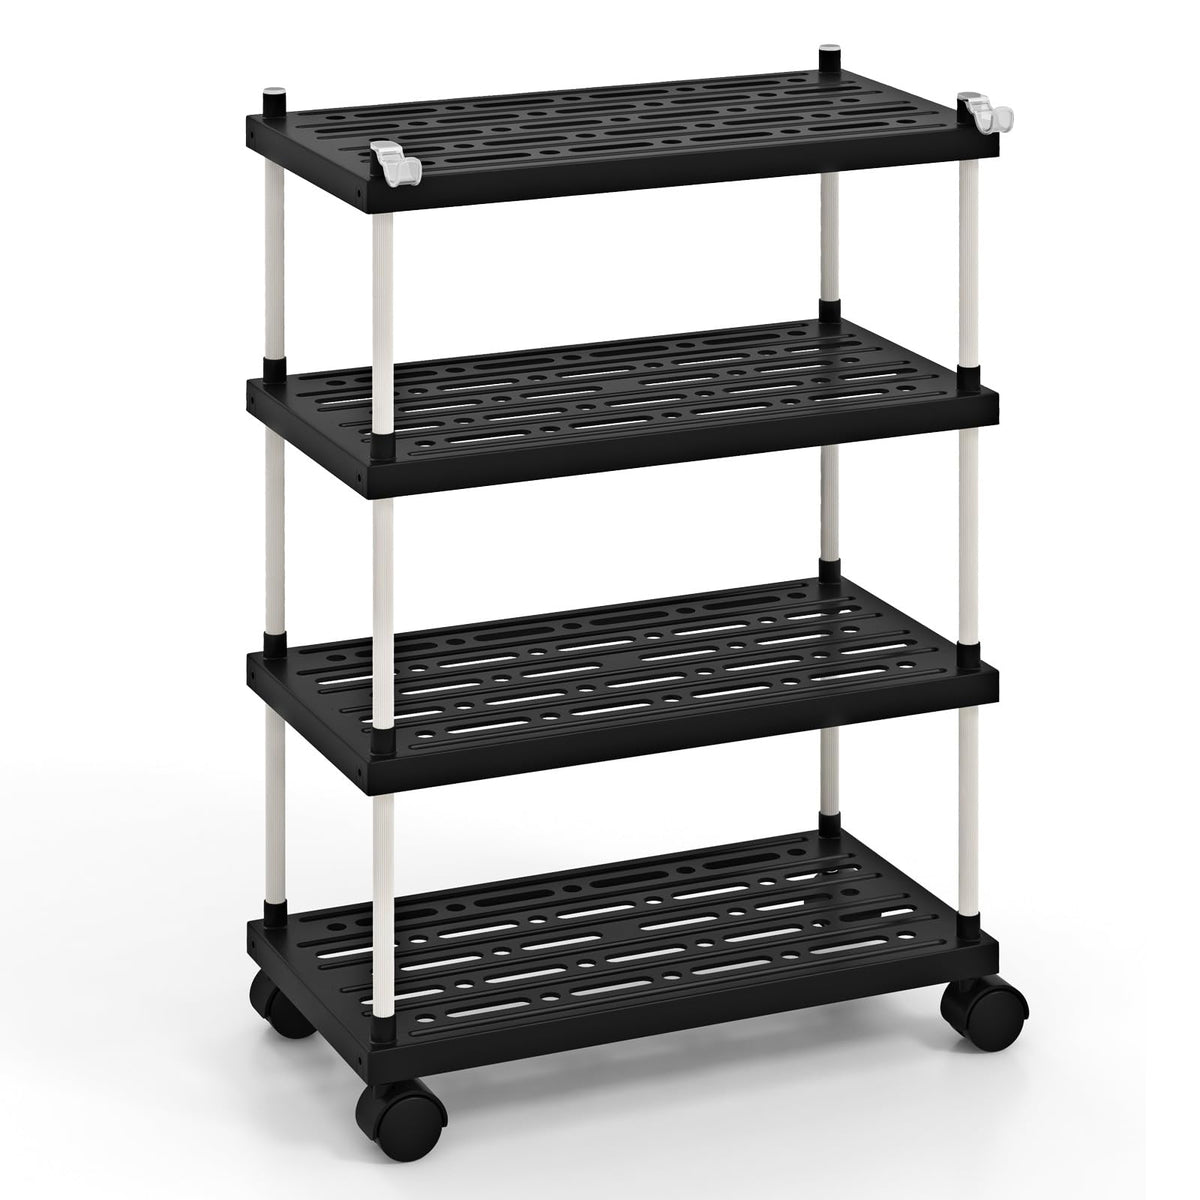 Giantex 4-Tier Slim Storage Cart Bathroom Kitchen Organizer Utility Cart with Lockable Wheels